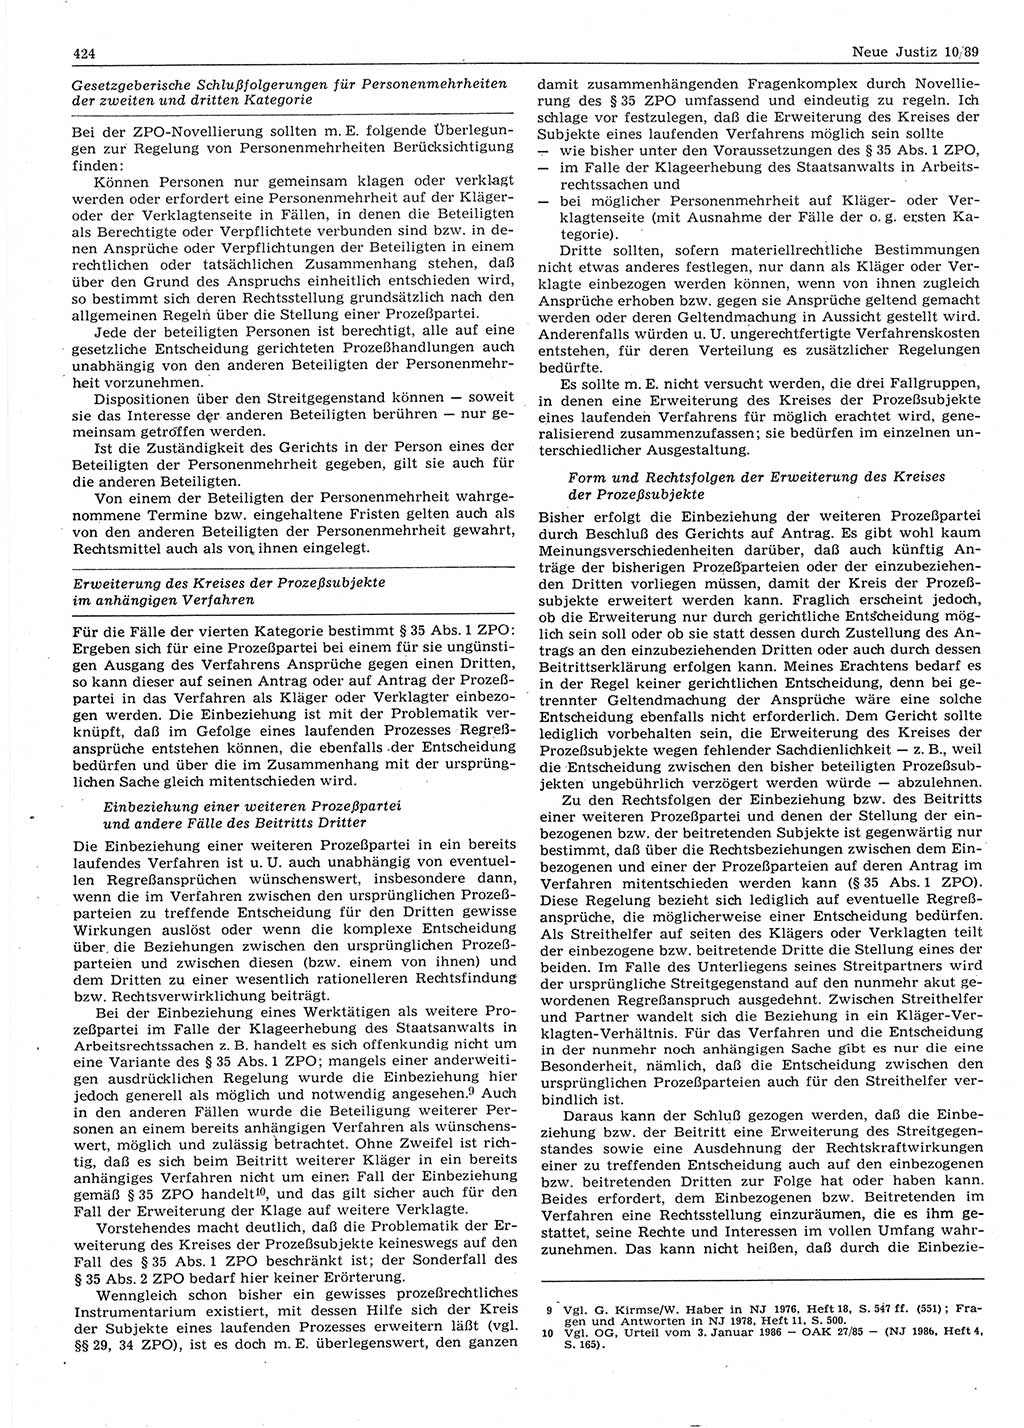 Neue Justiz (NJ), Zeitschrift für sozialistisches Recht und Gesetzlichkeit [Deutsche Demokratische Republik (DDR)], 43. Jahrgang 1989, Seite 424 (NJ DDR 1989, S. 424)